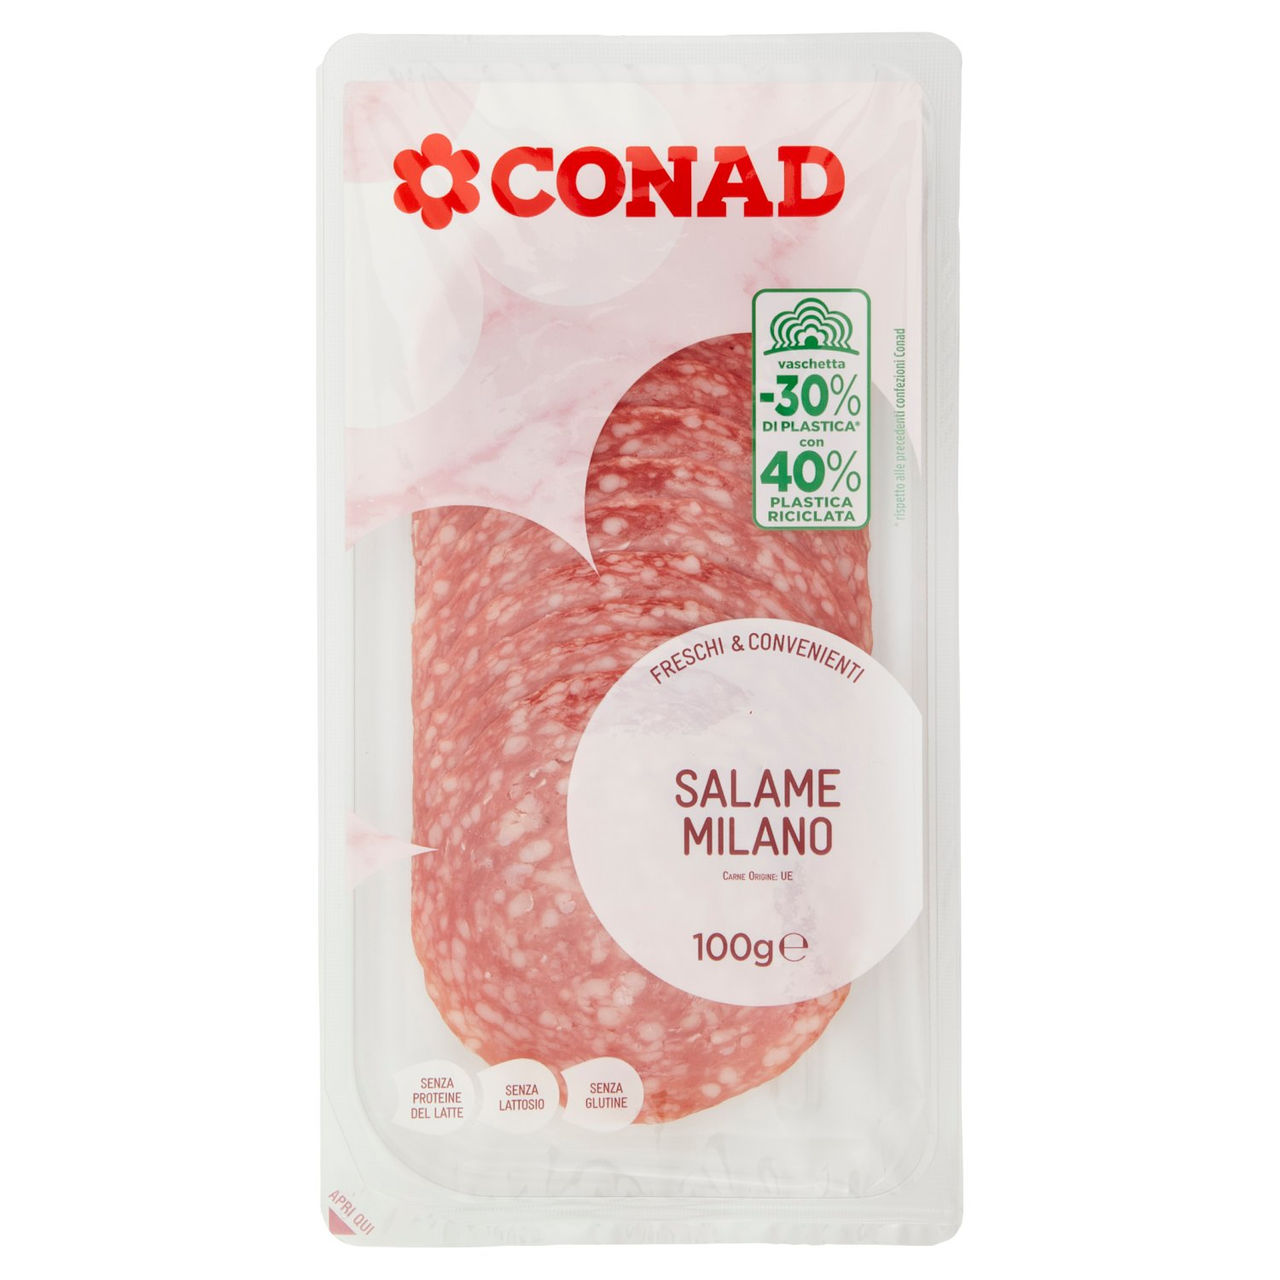 CONAD Freschi & Convenienti Salame Milano 100 g